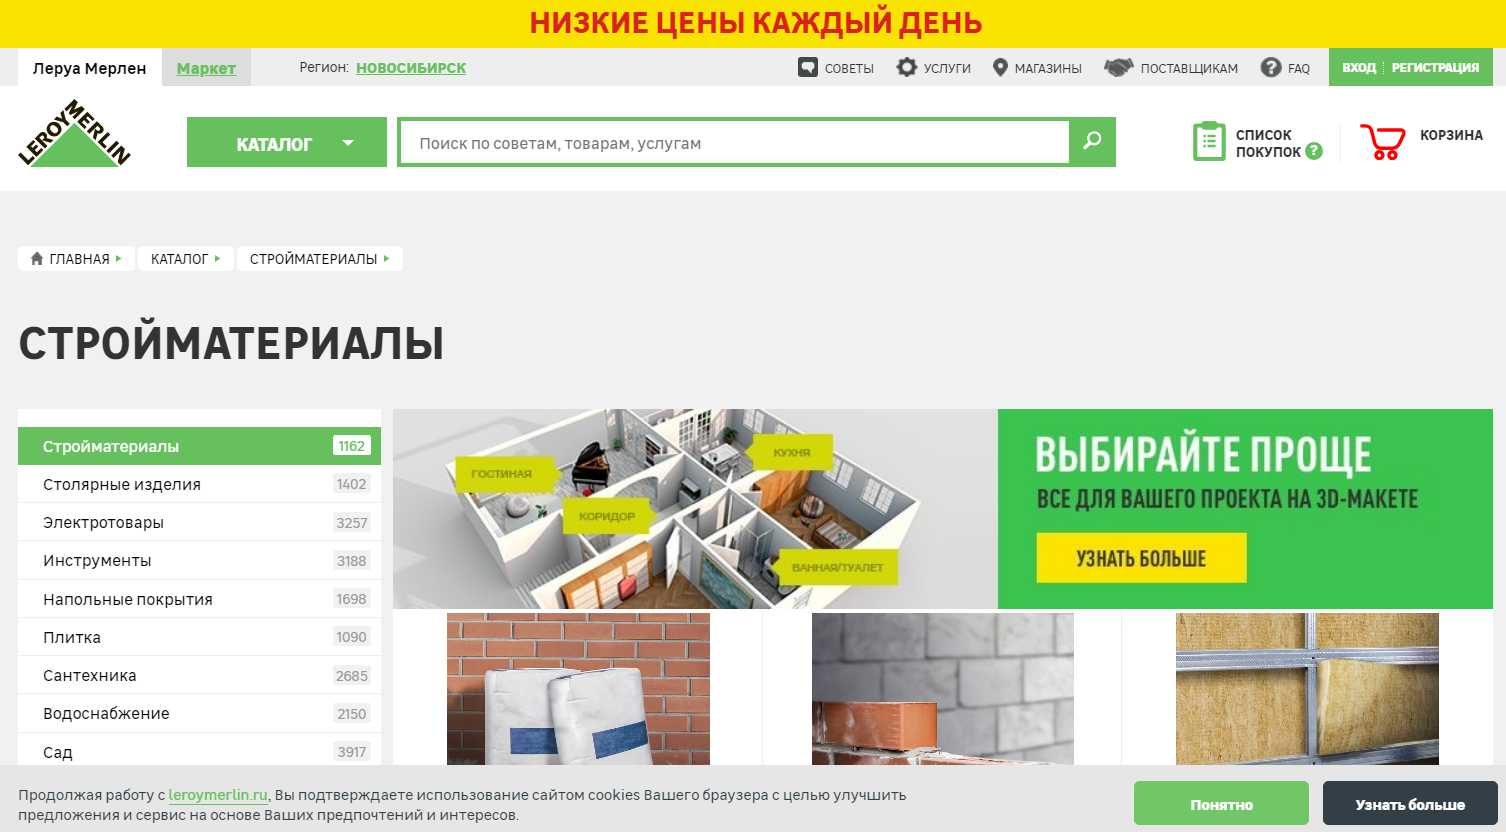 Сайт мерлен леруа москва официальный интернет магазин каталог с ценами